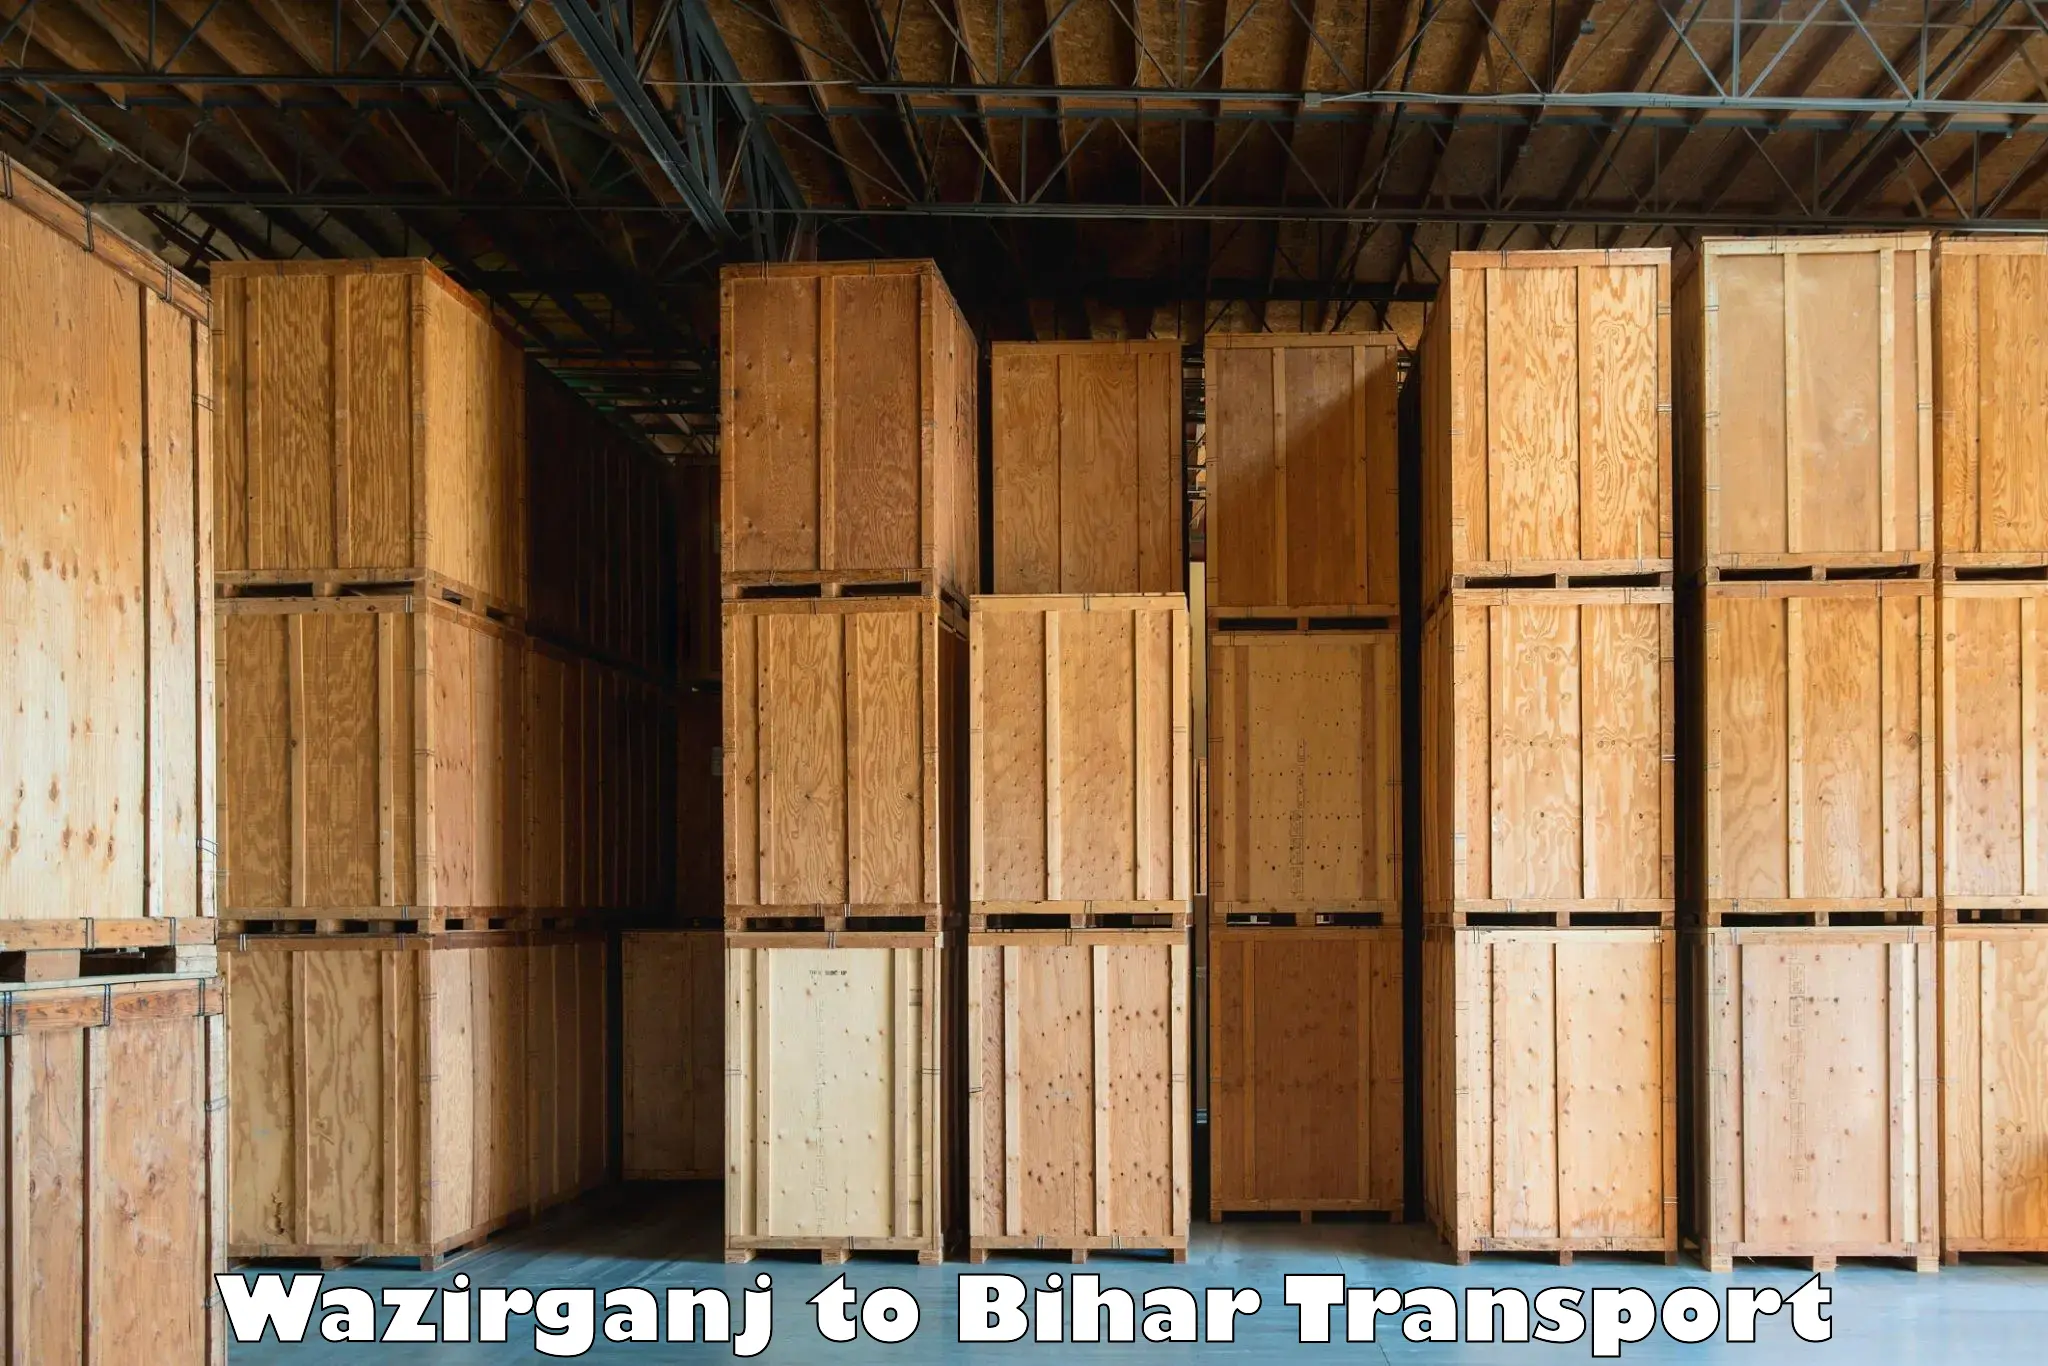 Commercial transport service Wazirganj to Aurangabad Bihar